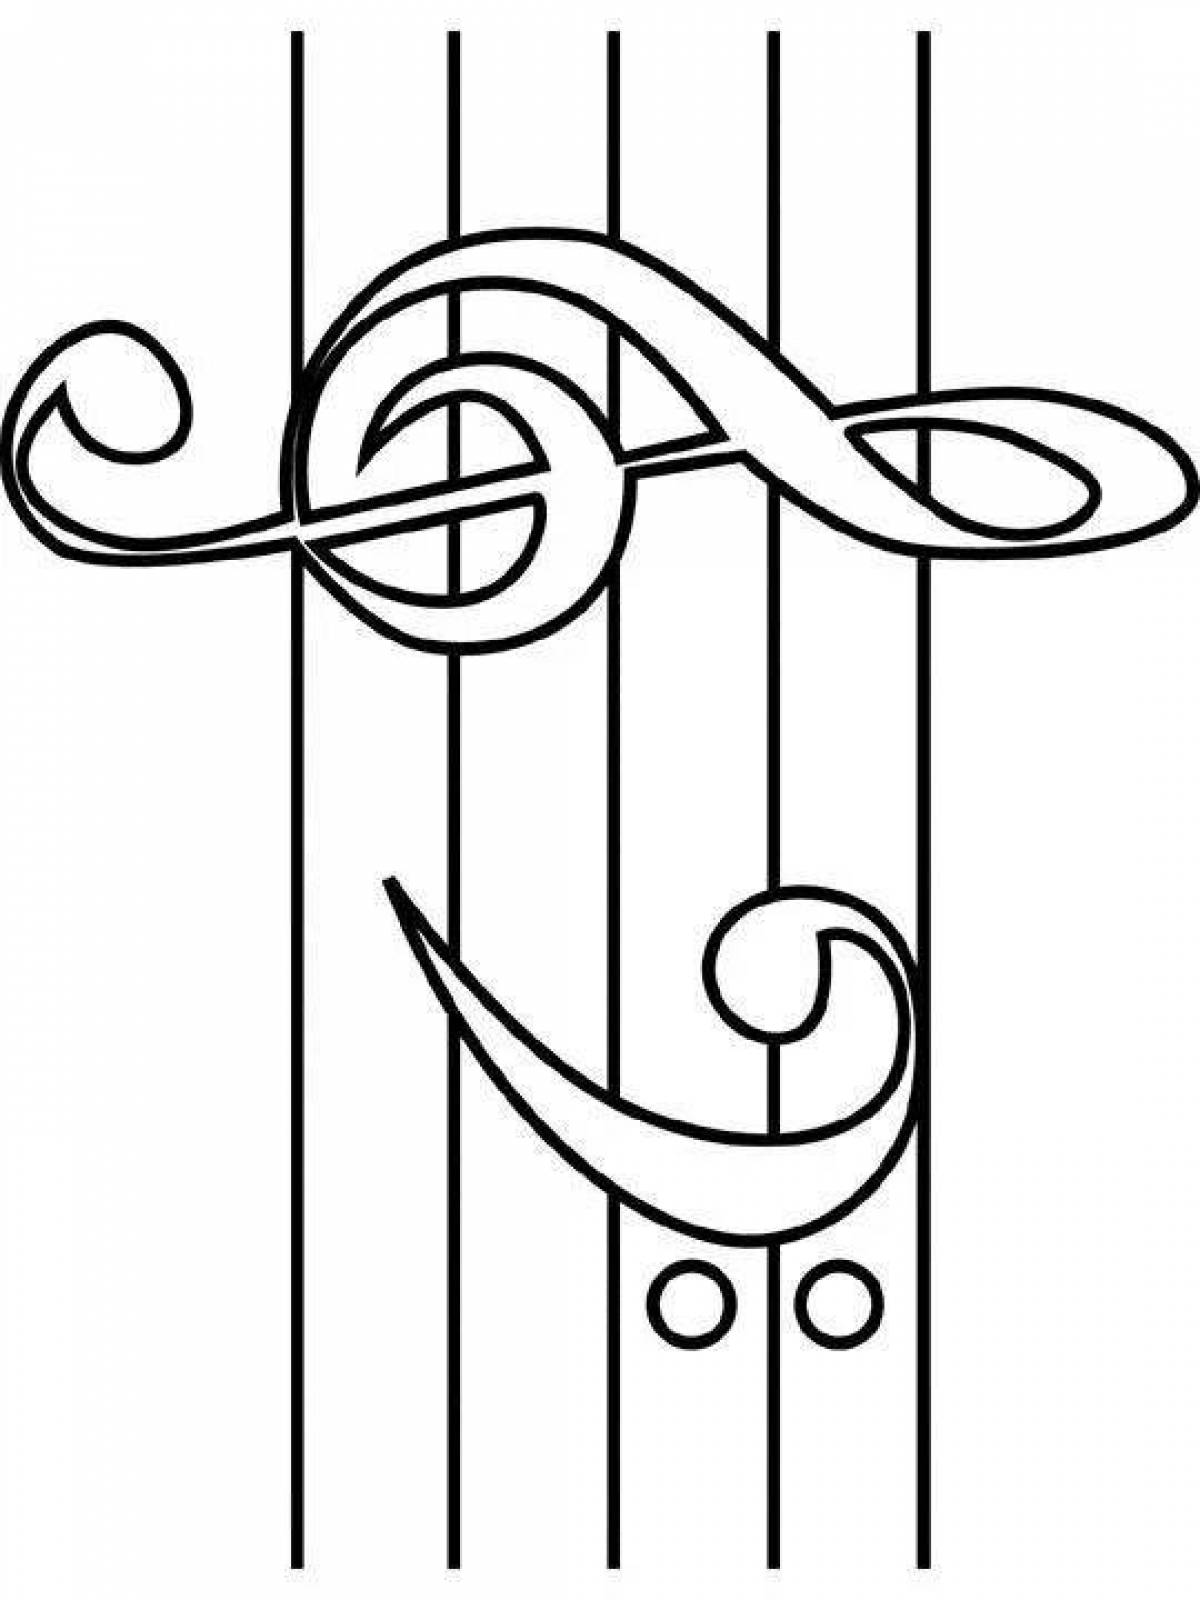 Мечтательная раскраска скрипичный ключ